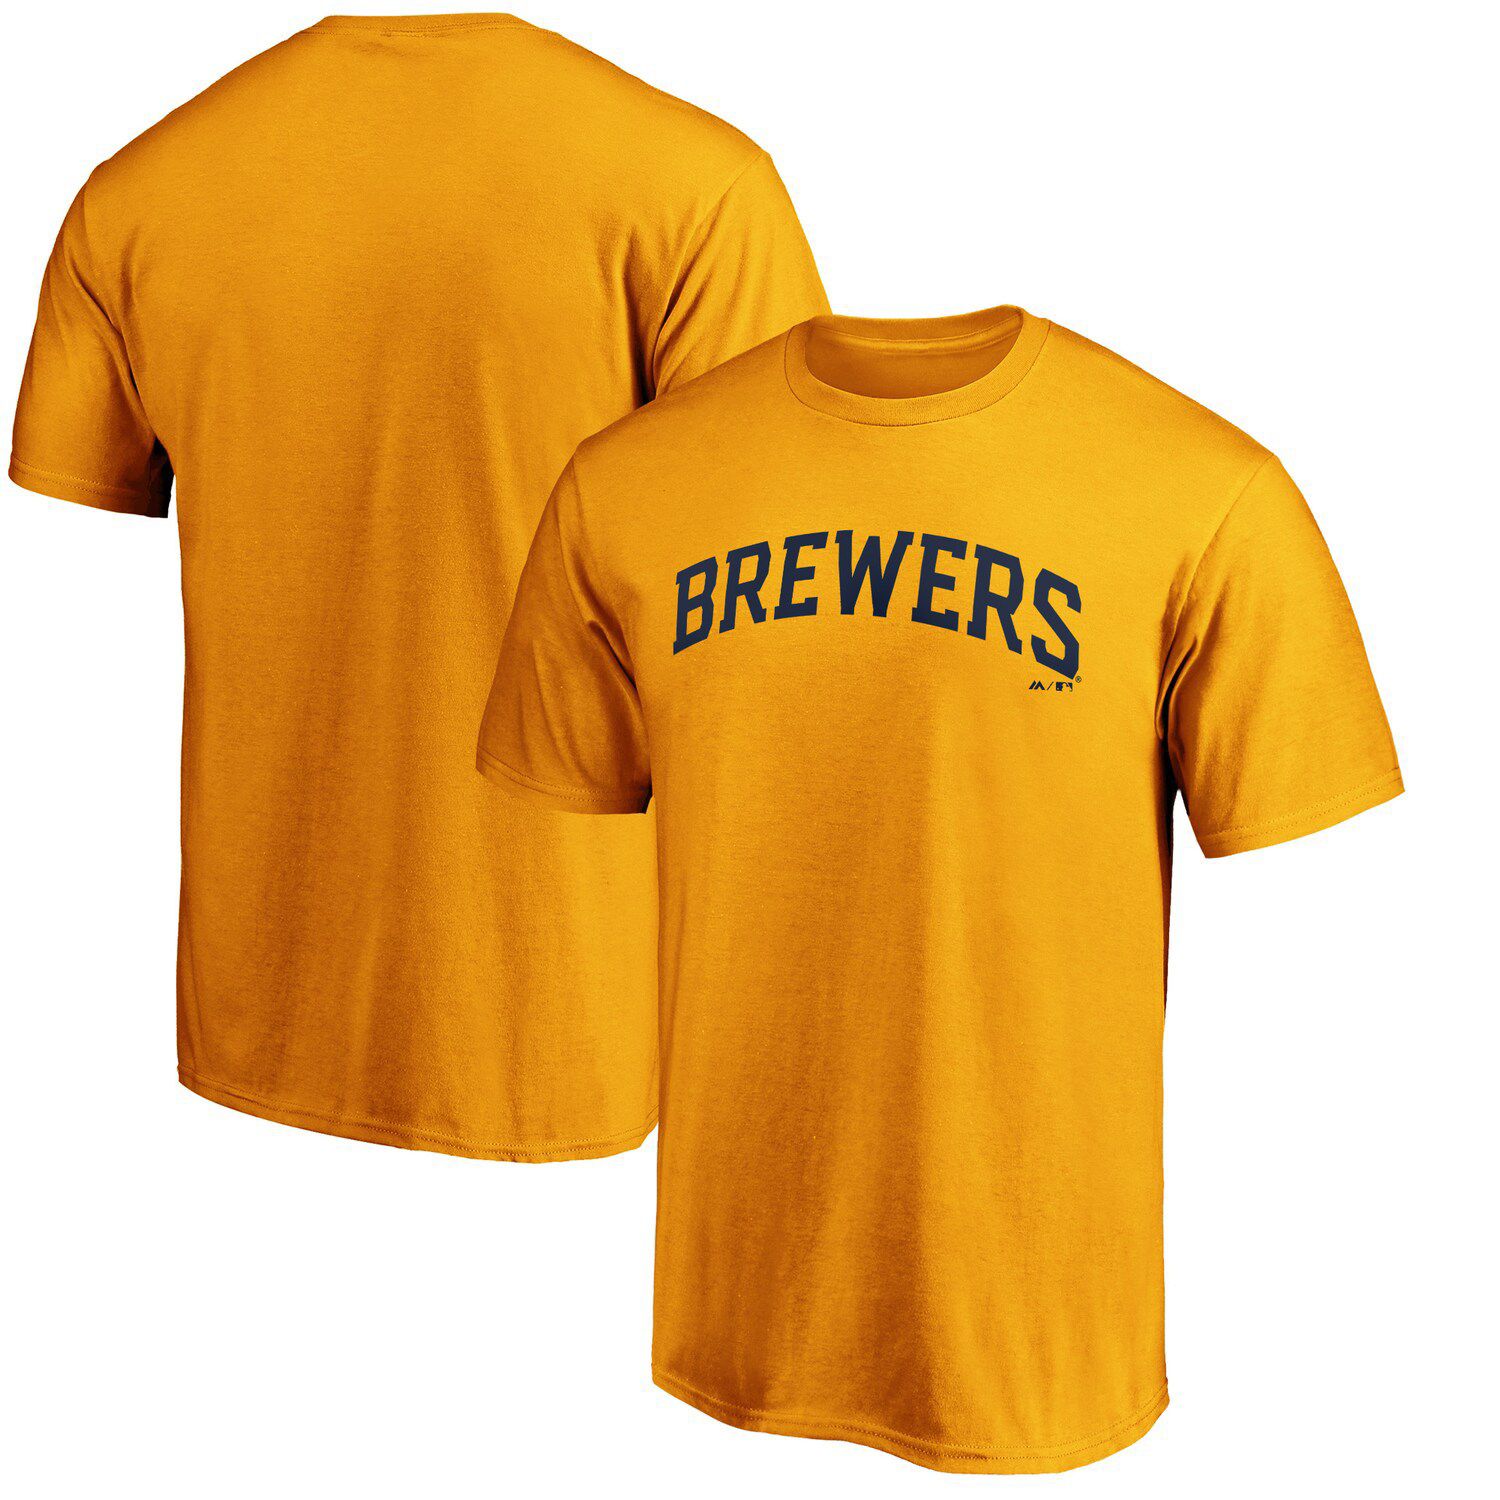 brewers chorizo shirt